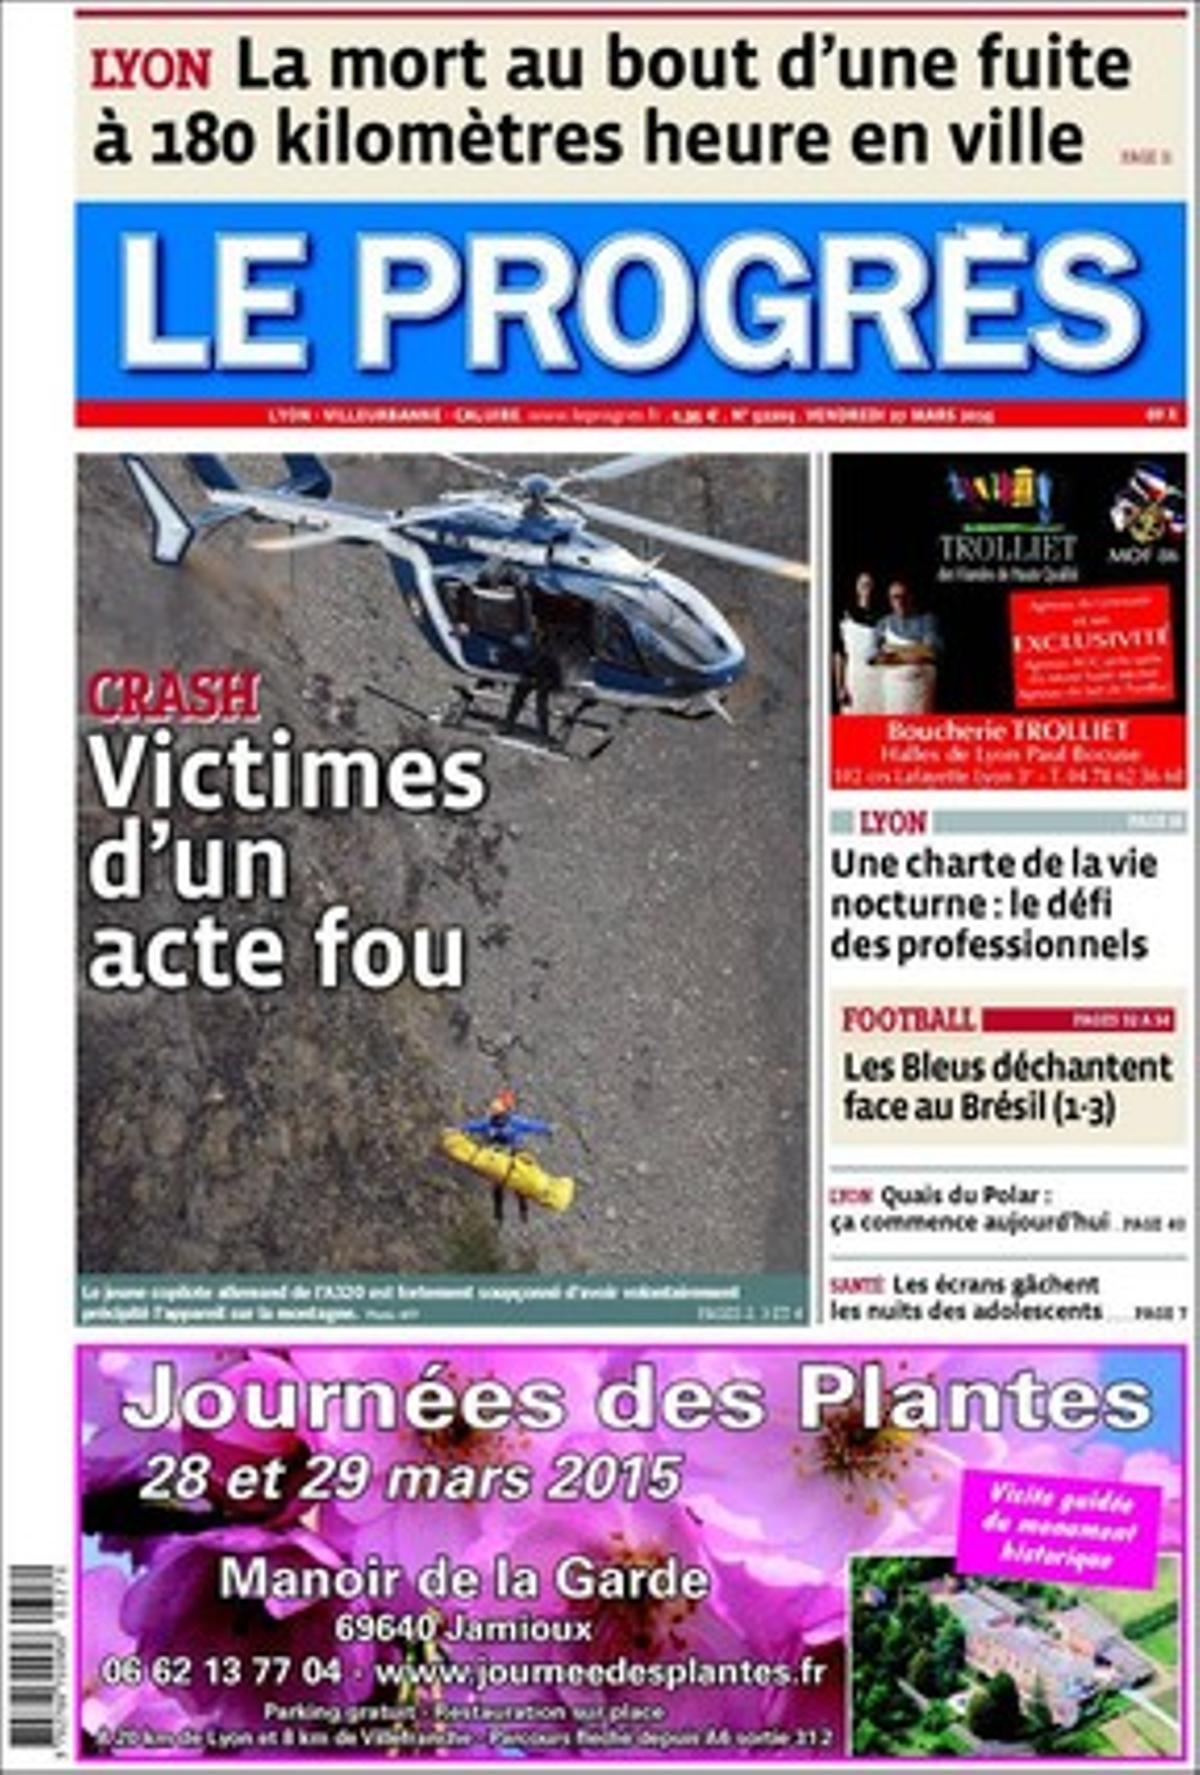 Portada del periódico francés ’Le Progres’. 